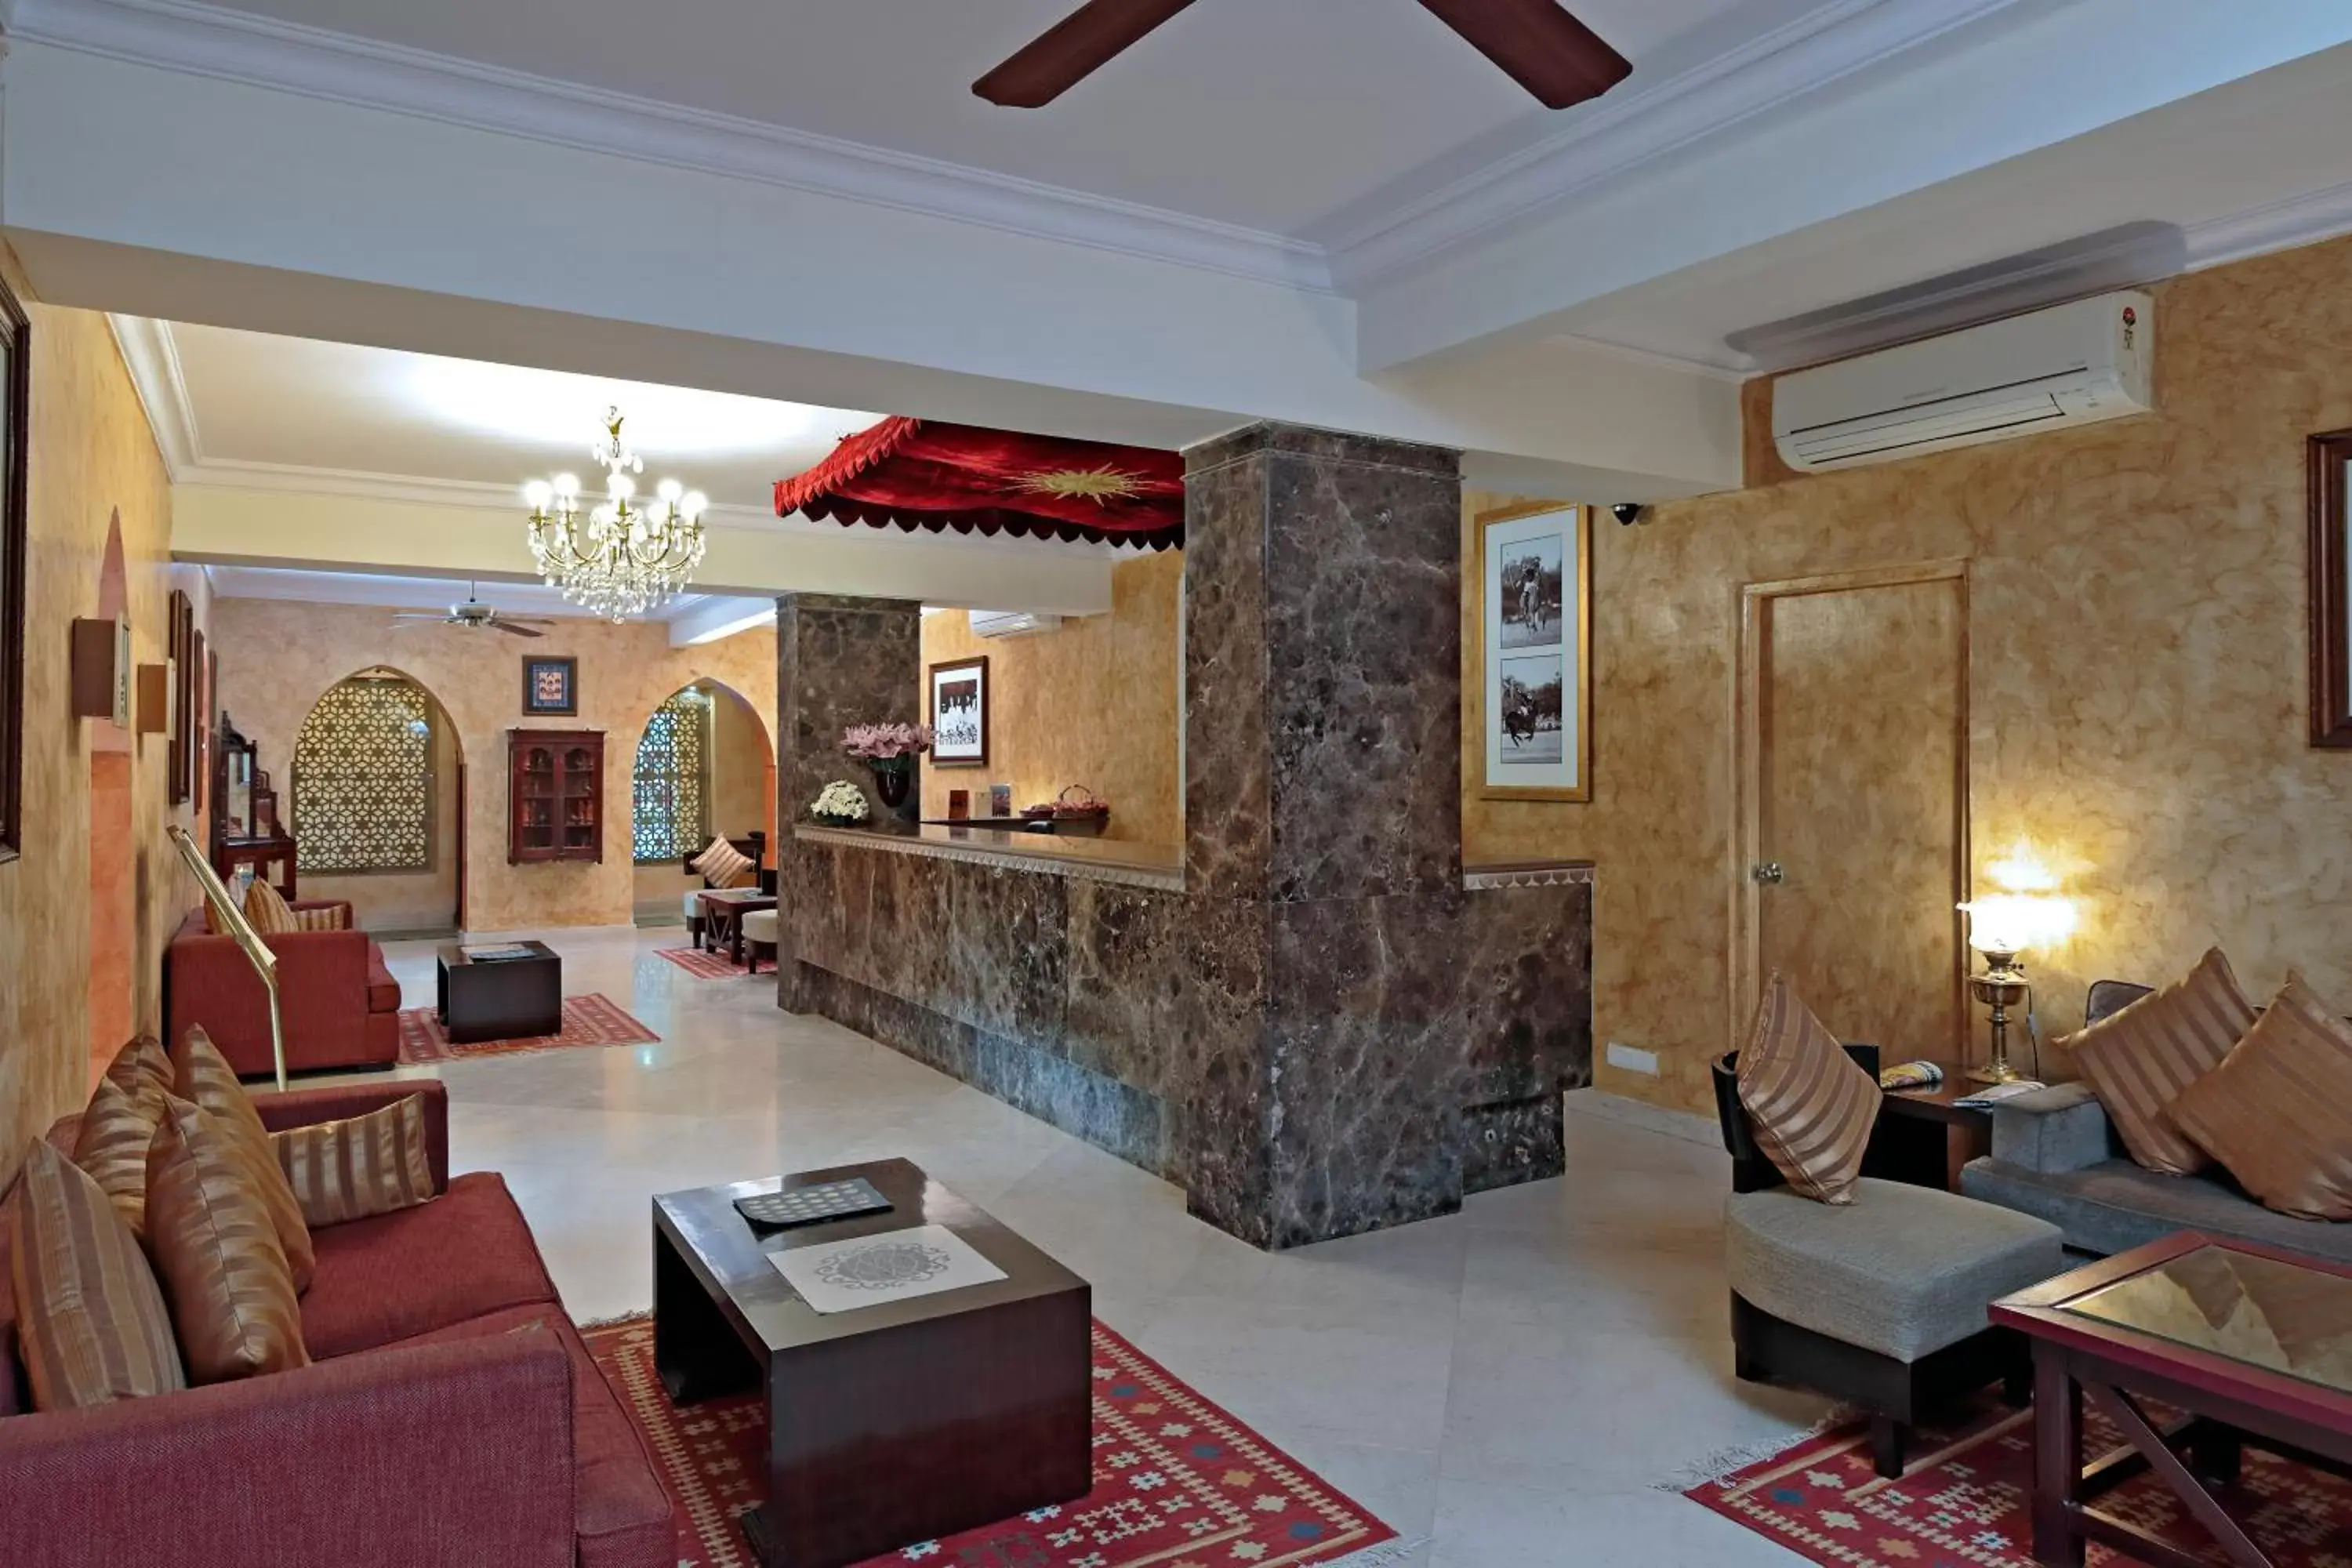 Lobby or reception, Lobby/Reception in Ranbanka Palace